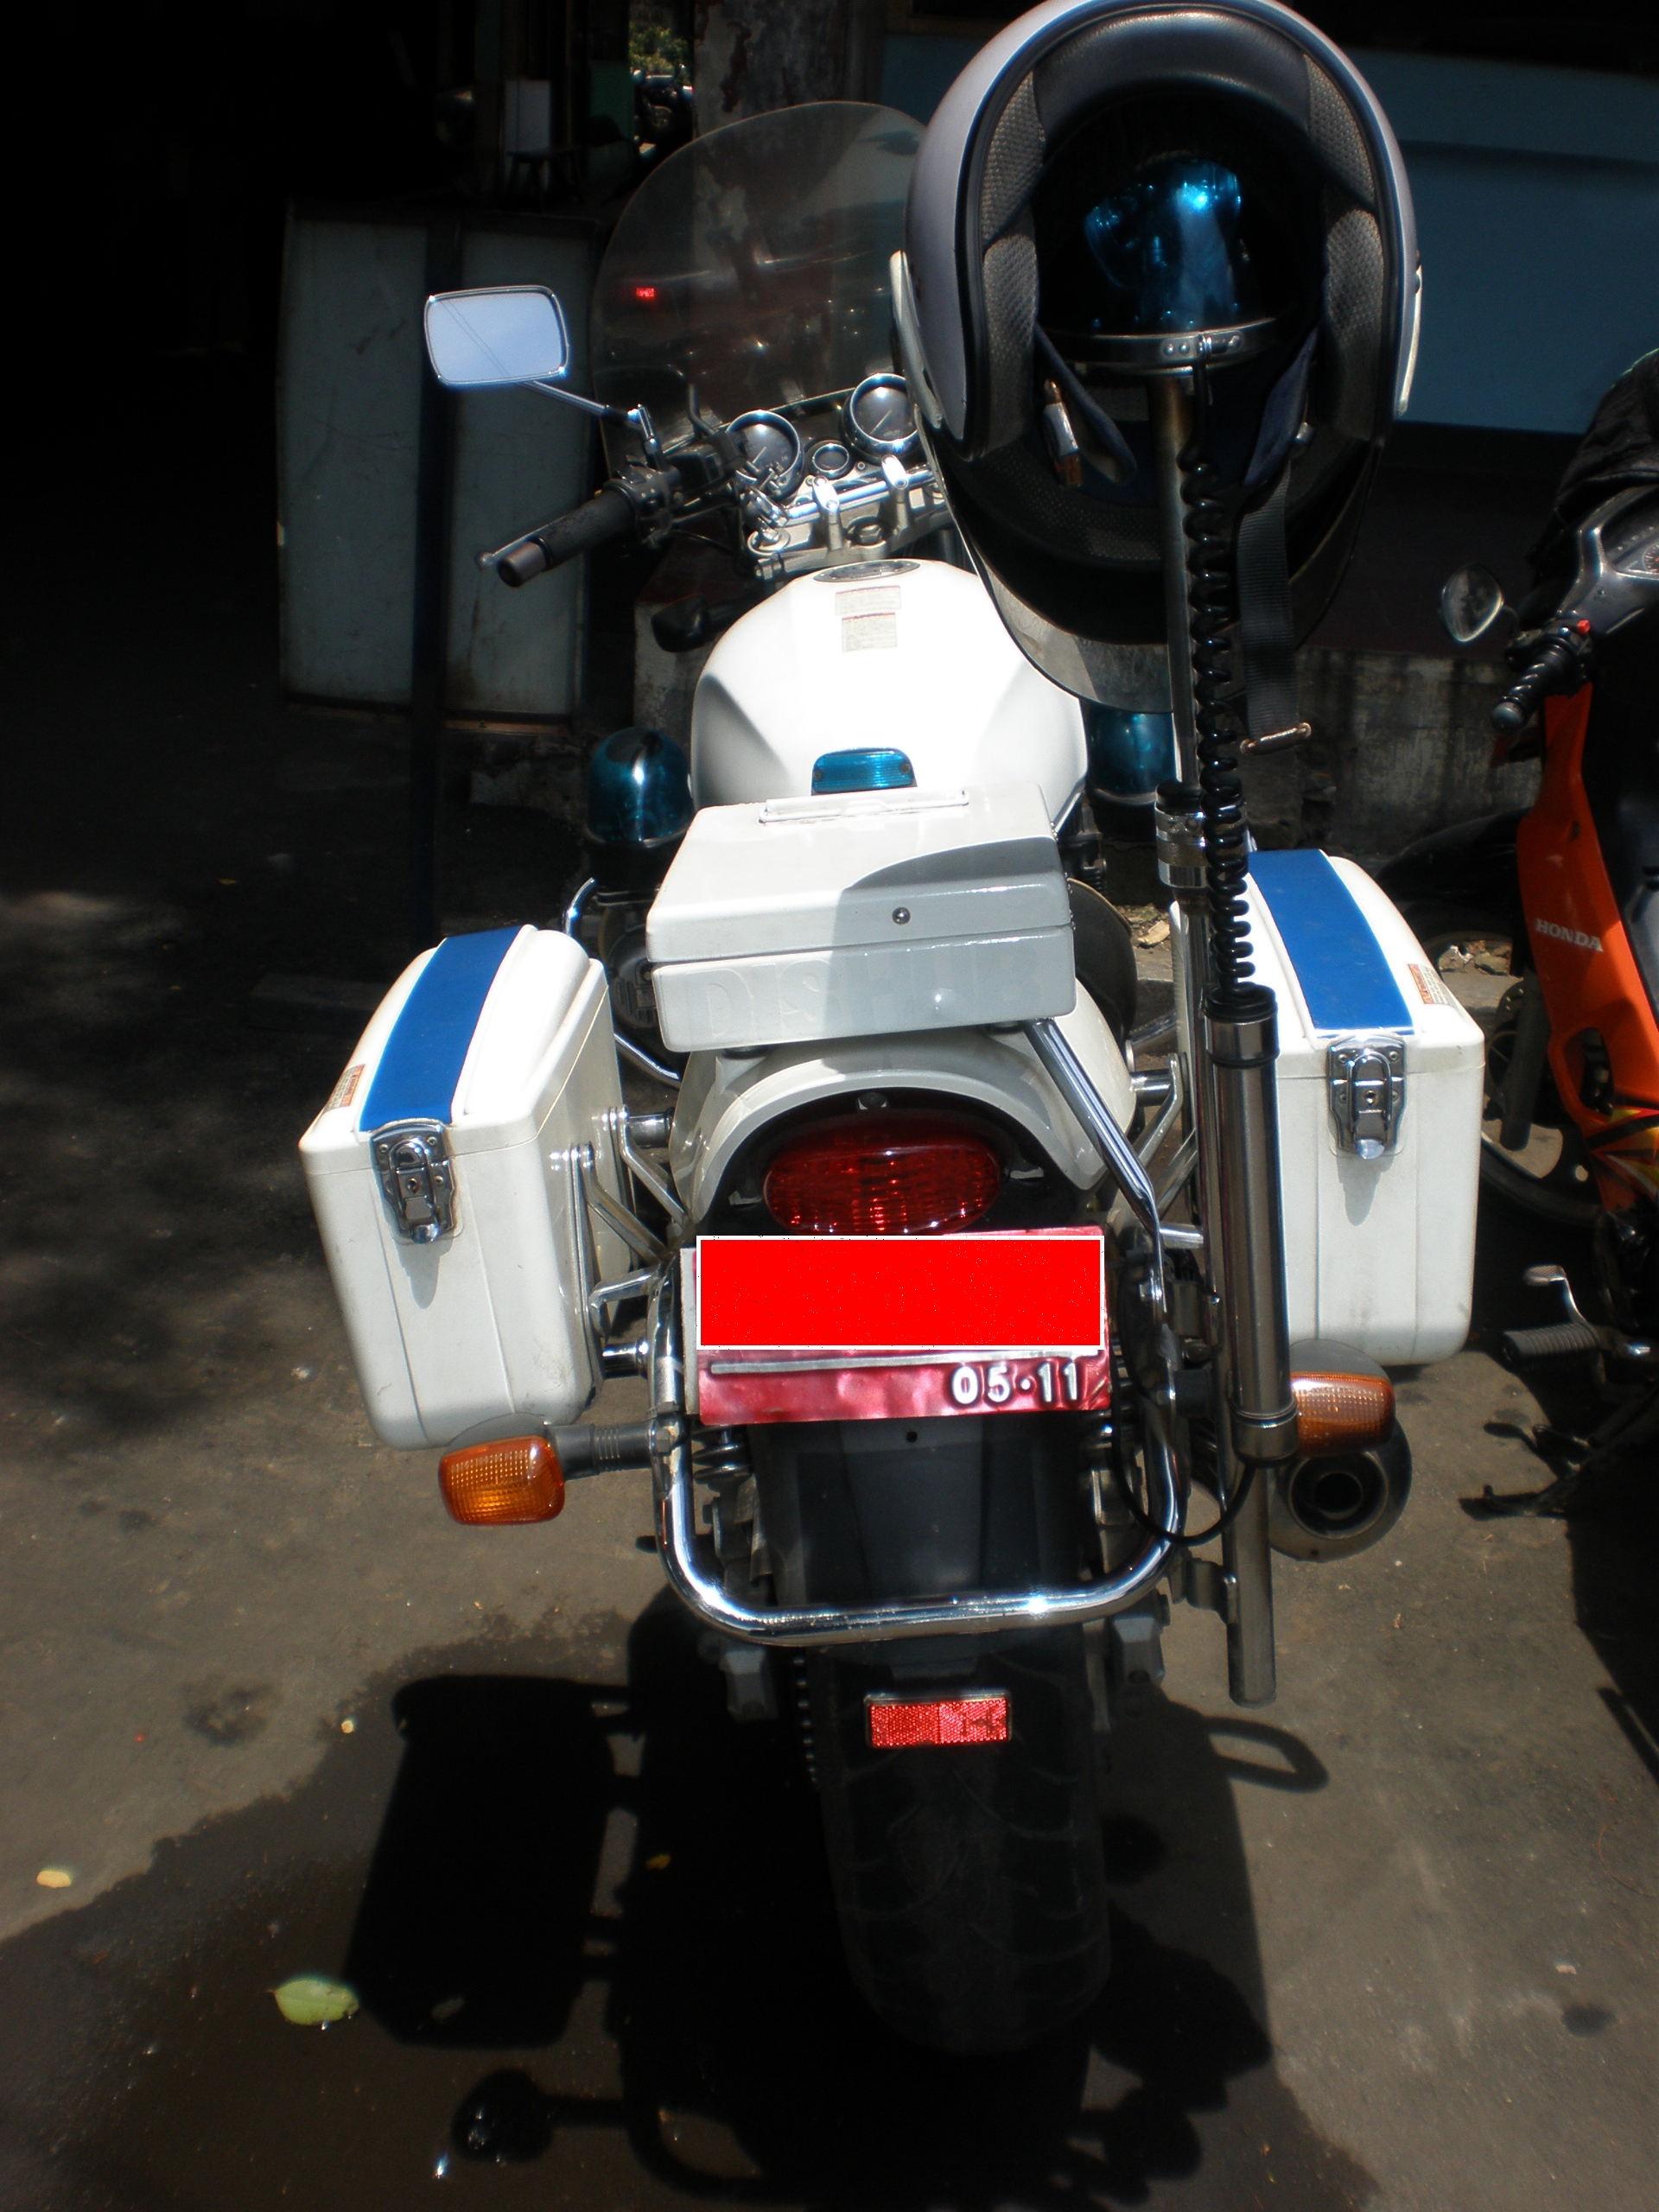 Riding Impression Suzuki GSX750 Police Part 2 Habis